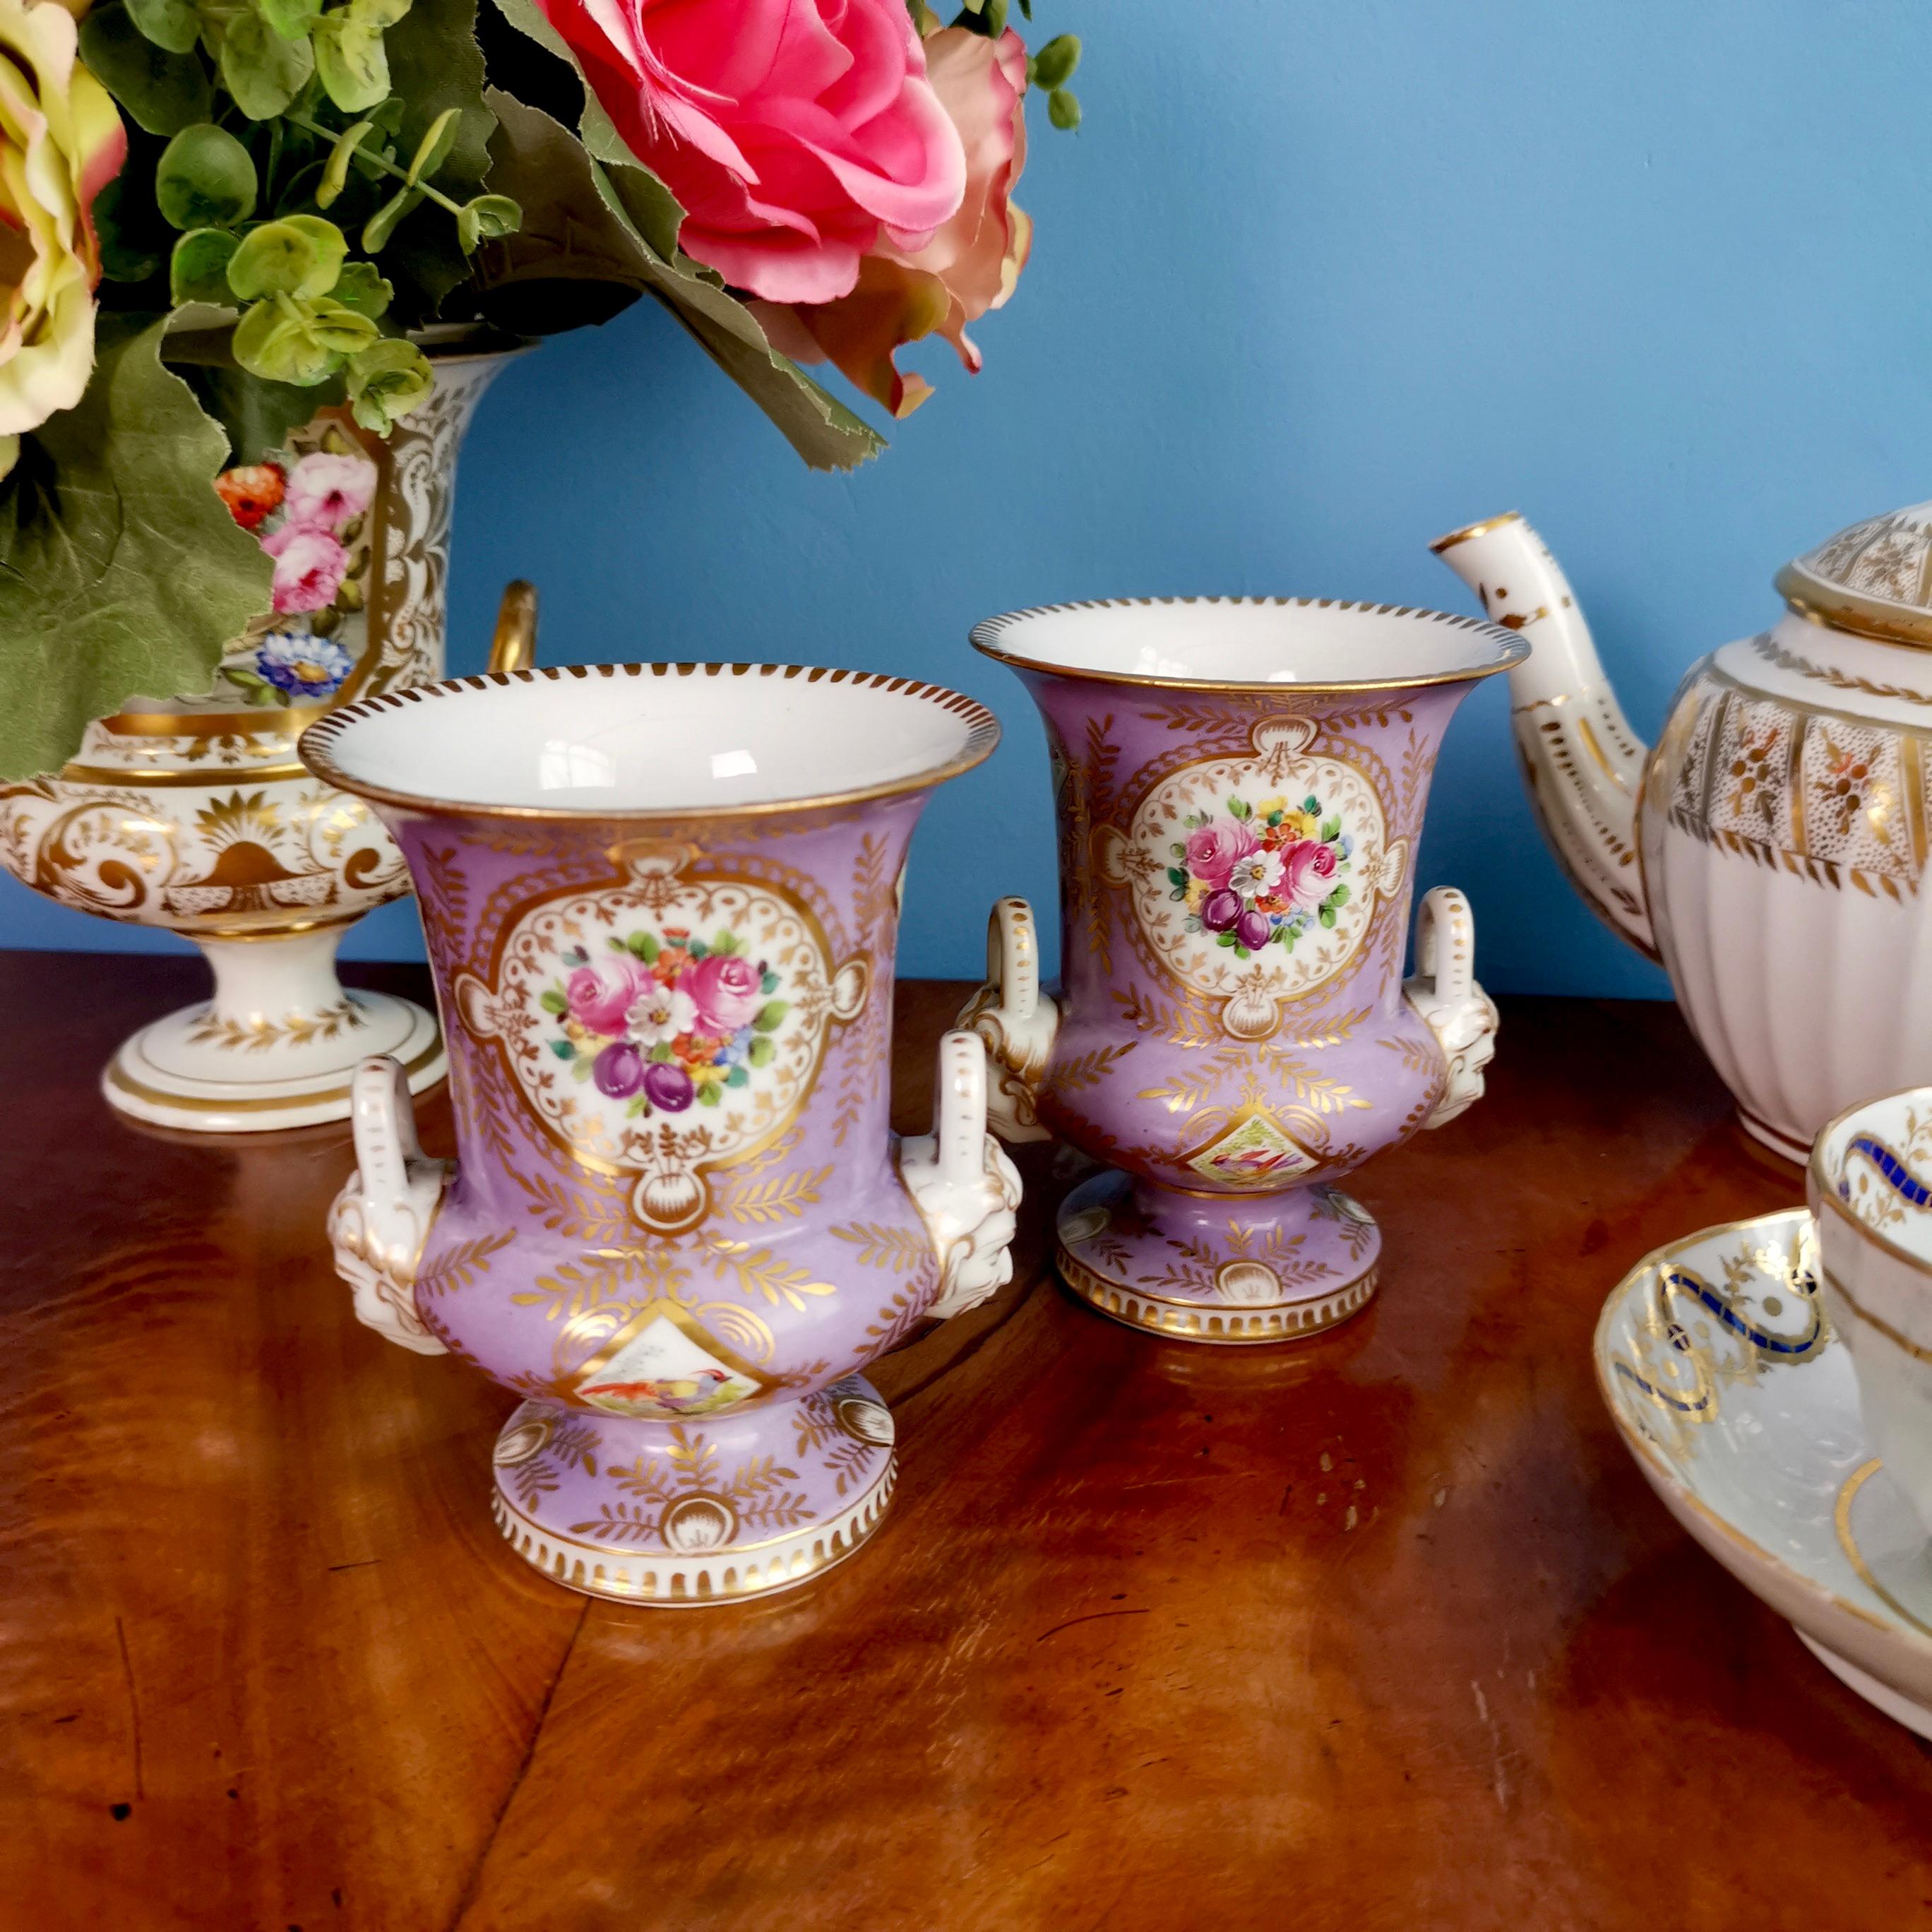 Nous proposons un ensemble de deux beaux vases campana en porcelaine réalisés vers 1815, attribués à Edmé Samson à Paris. Les vases ont un beau fond lilas, une belle dorure et des réserves de fleurs peintes à la main.

Edmé Samson a été fondé à